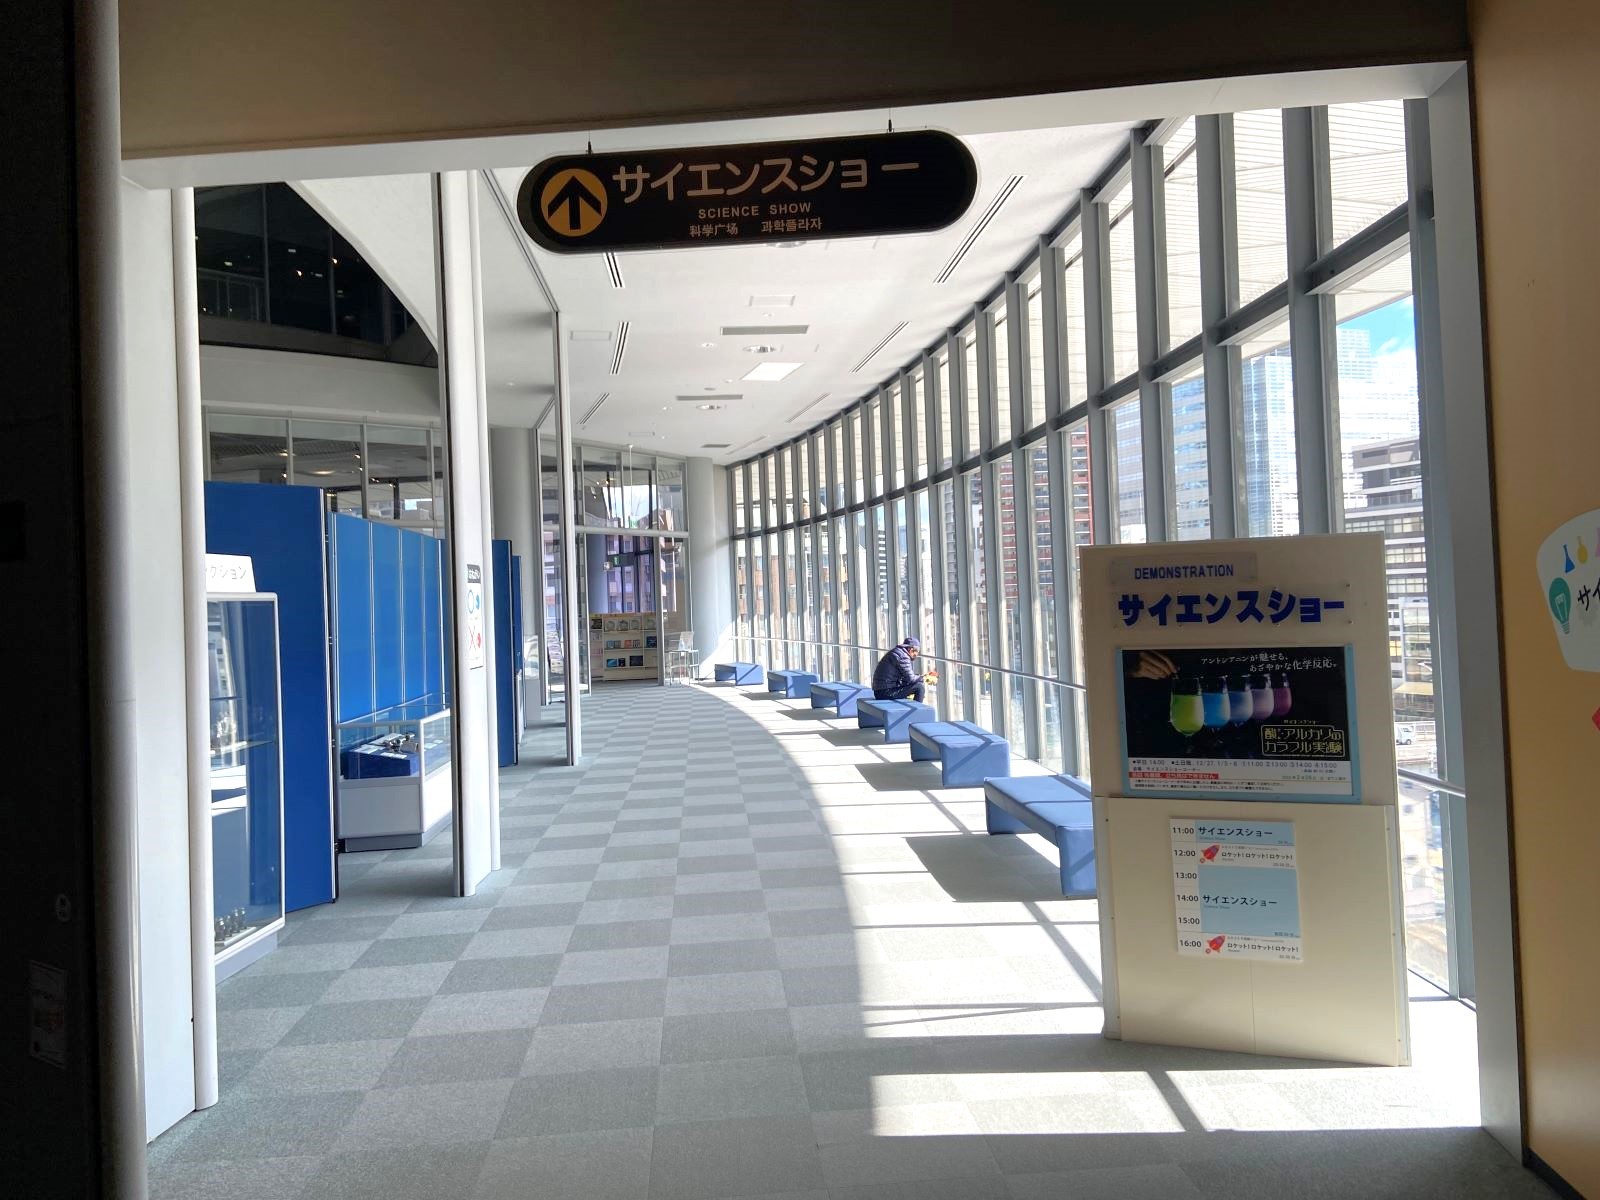 大阪市立博物館　サイエンスショー